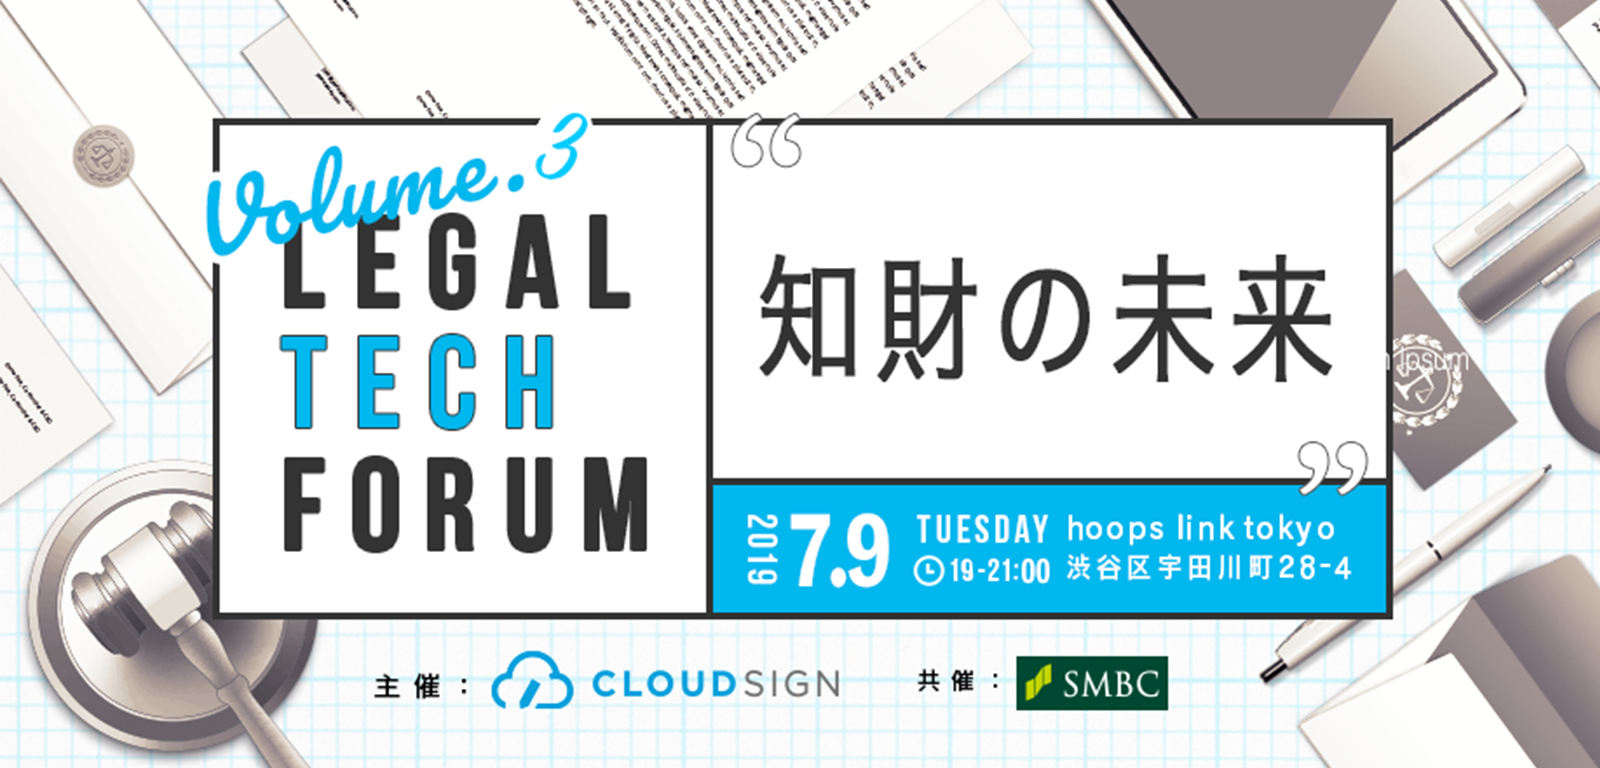 竹書房 竹村取締役をお迎えして「Legal Tech Forum Vol.3 ー知財の未来ー」を開催